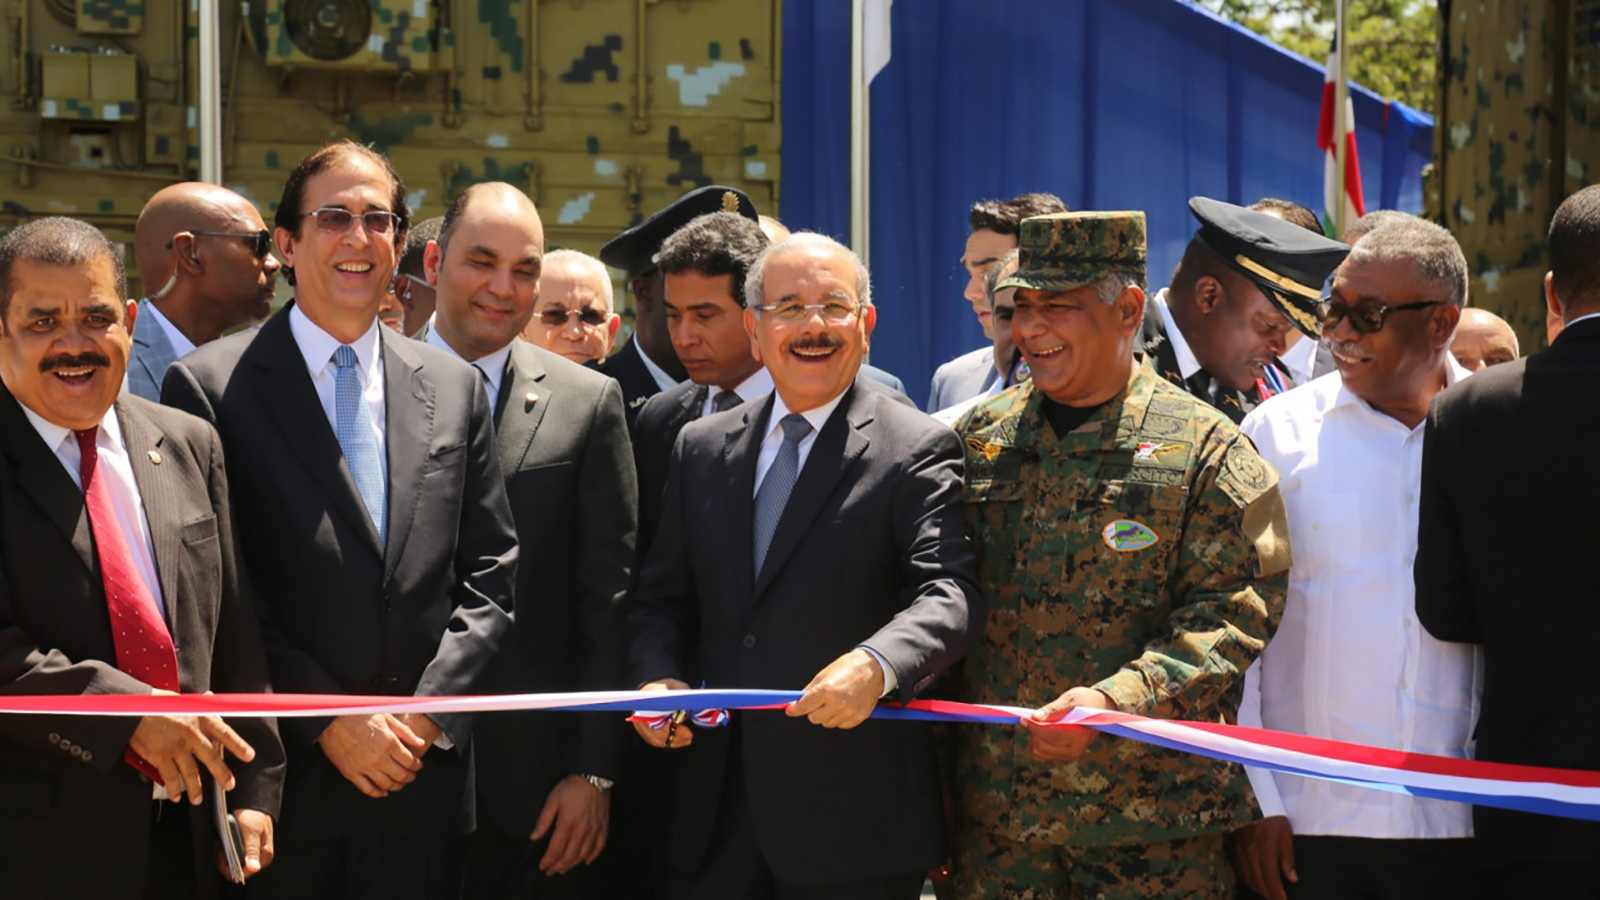 REPÚBLICA DOMINICANA: Presidente Danilo Medina entrega Puesto Interagencial de Gestión Coordinada de Frontera, en Elías Piña